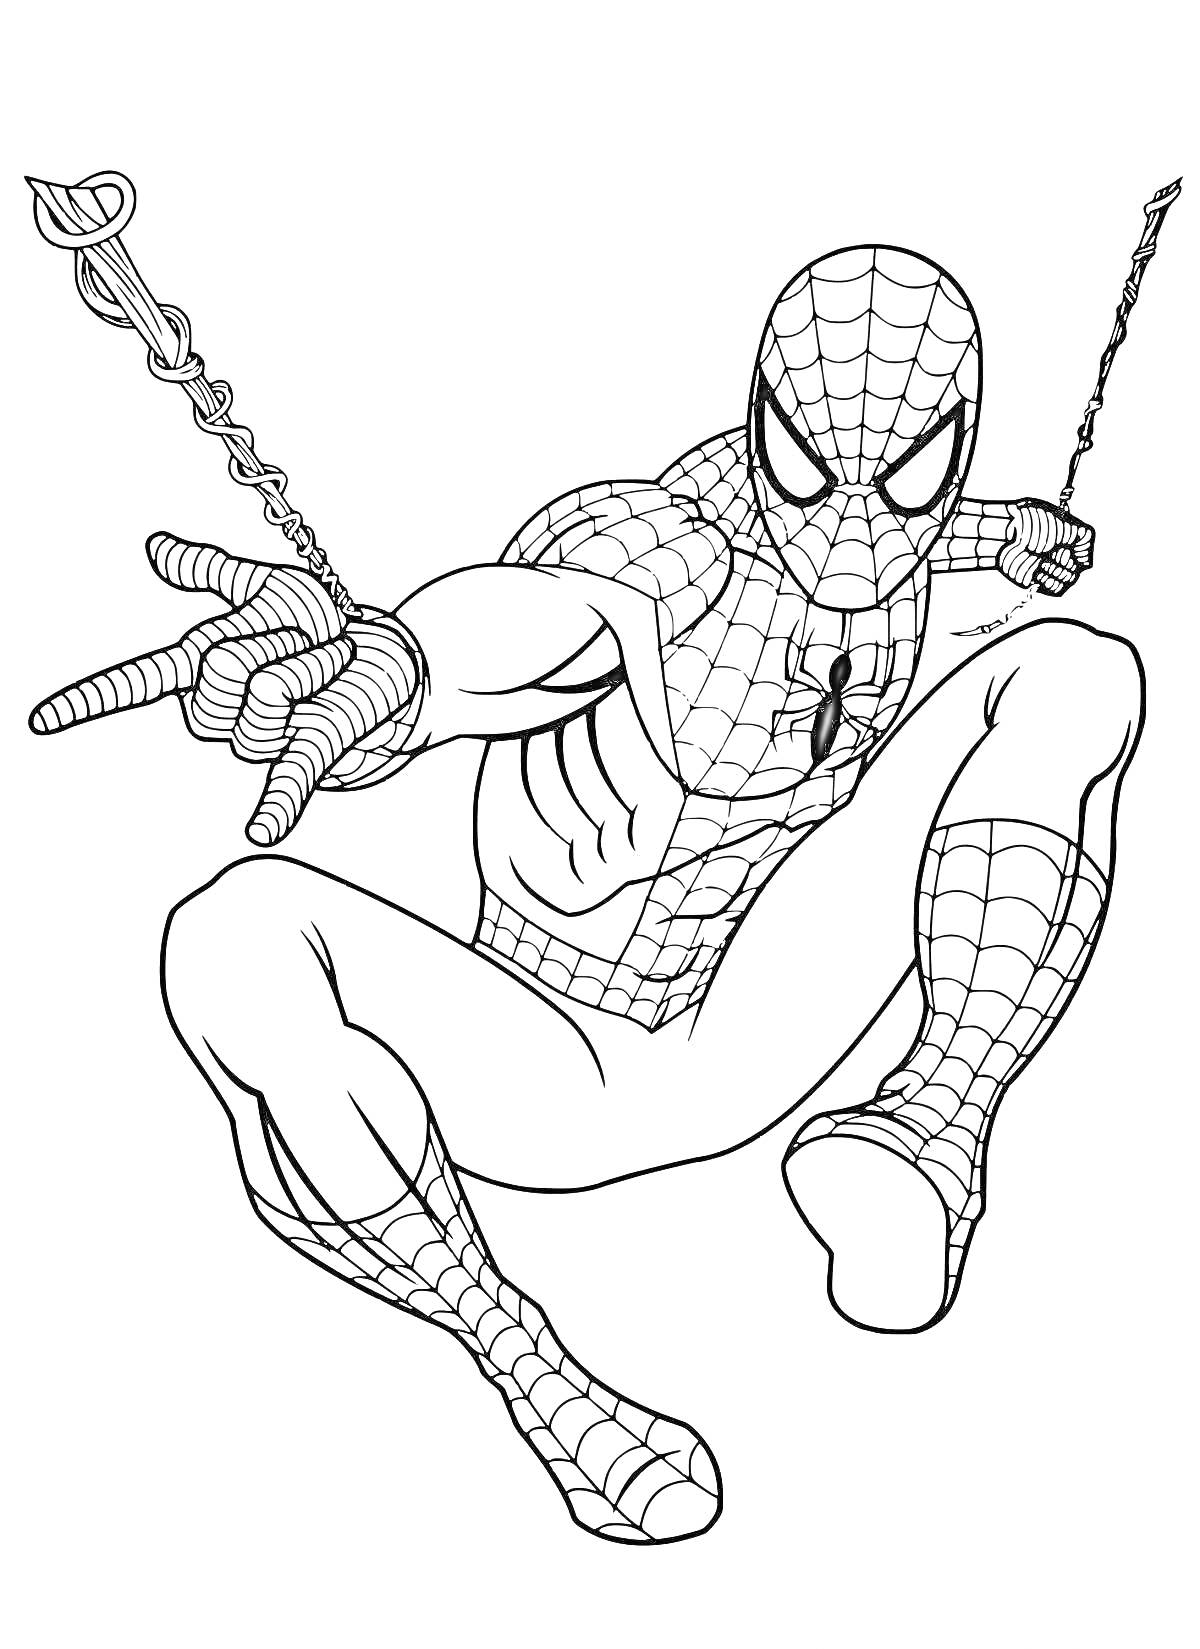 Раскраска Человек-Паук выпускает паутину и раскачивается на паутине с обеих рук.